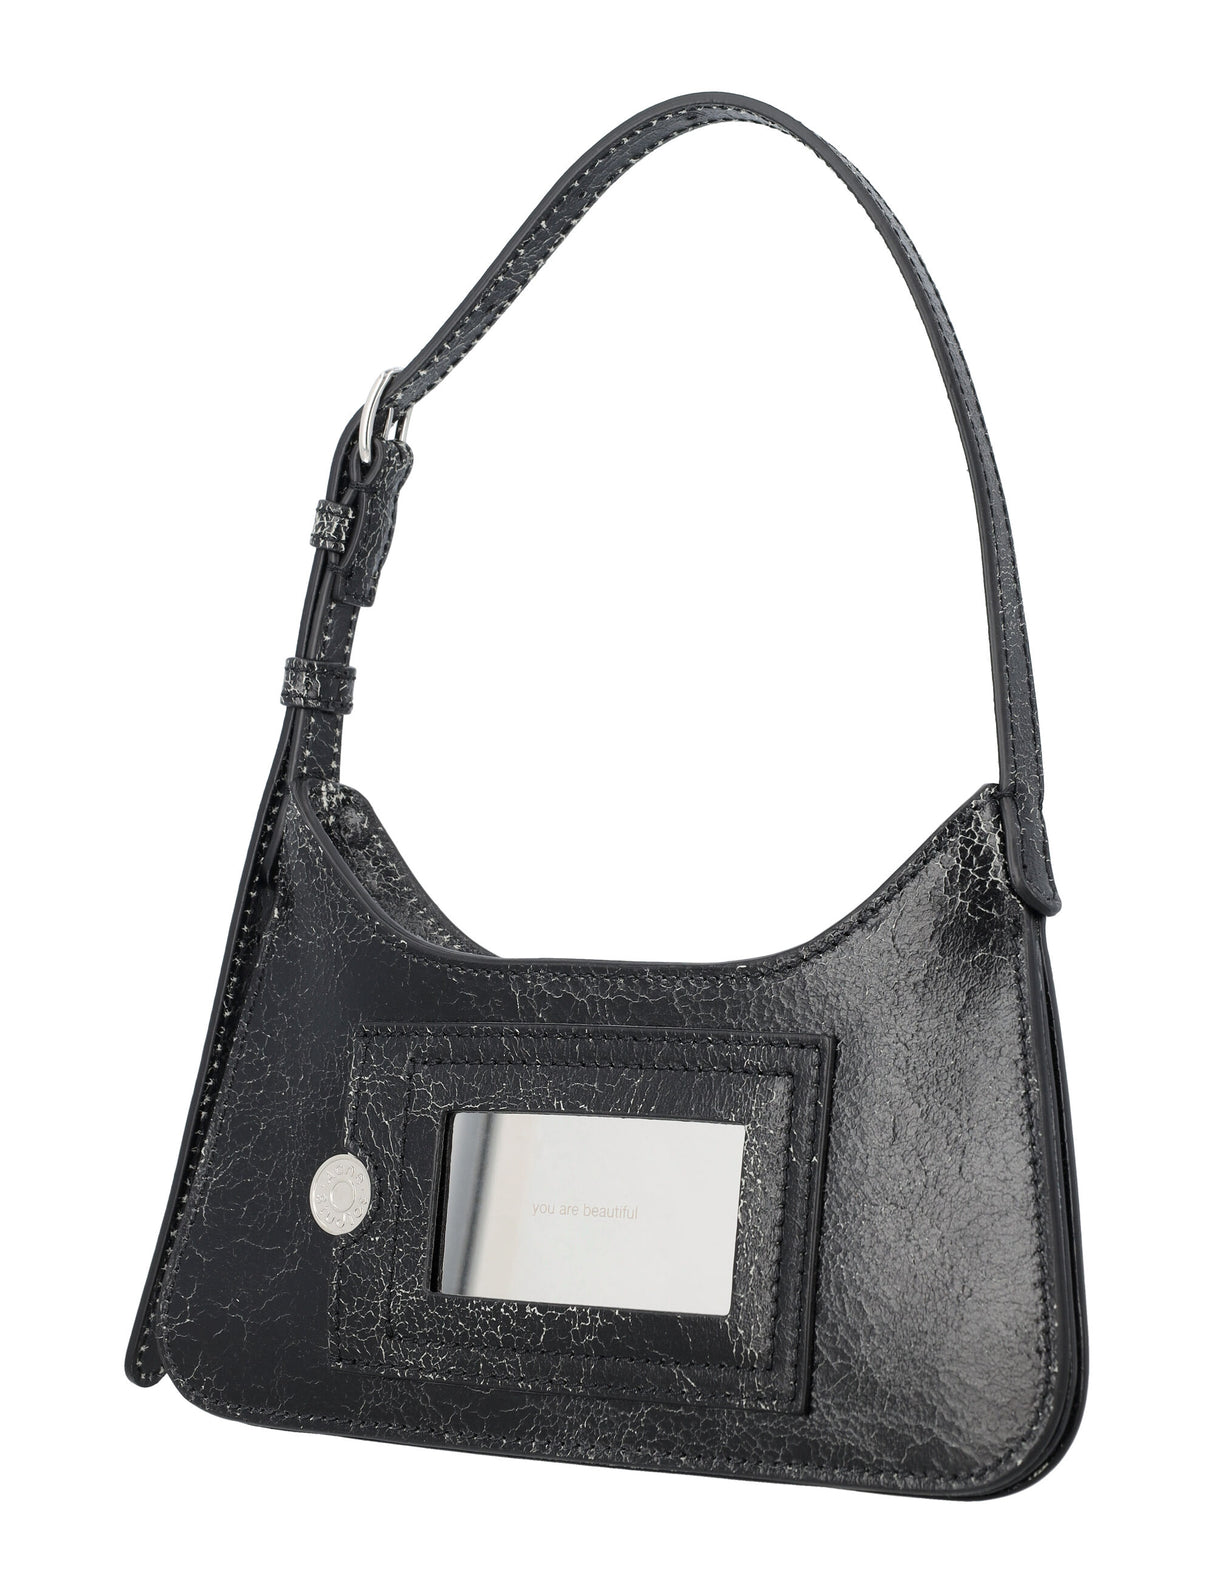 Cracked Leather Shoulder Handbag – Adjustable Strap, Folded Design, Acne Studios Logo Patch